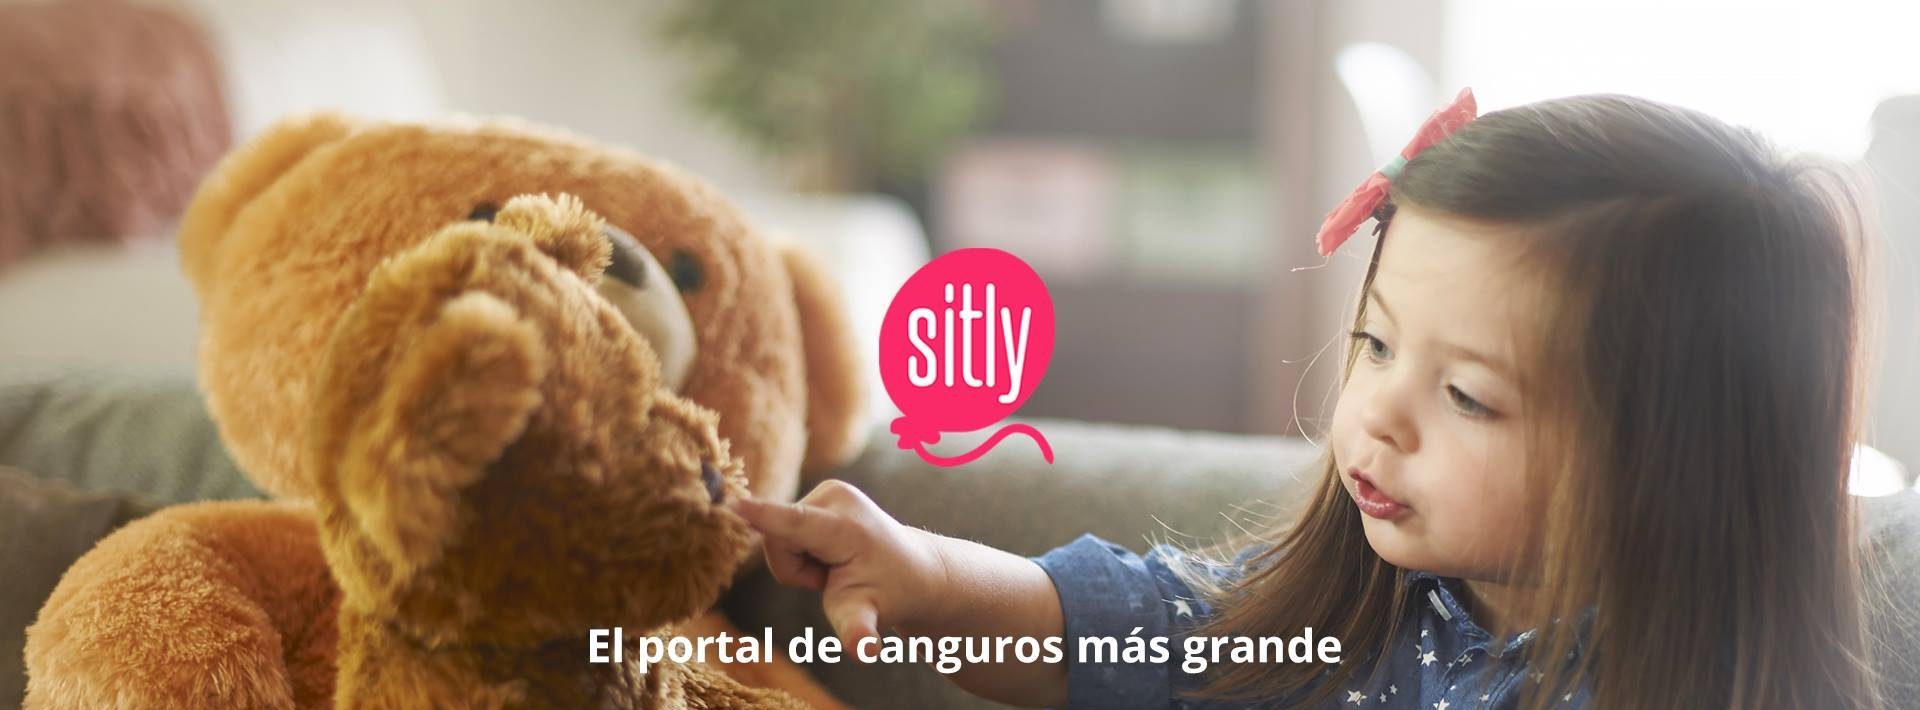 Sitly – Encuentra canguro o trabajo de niñera